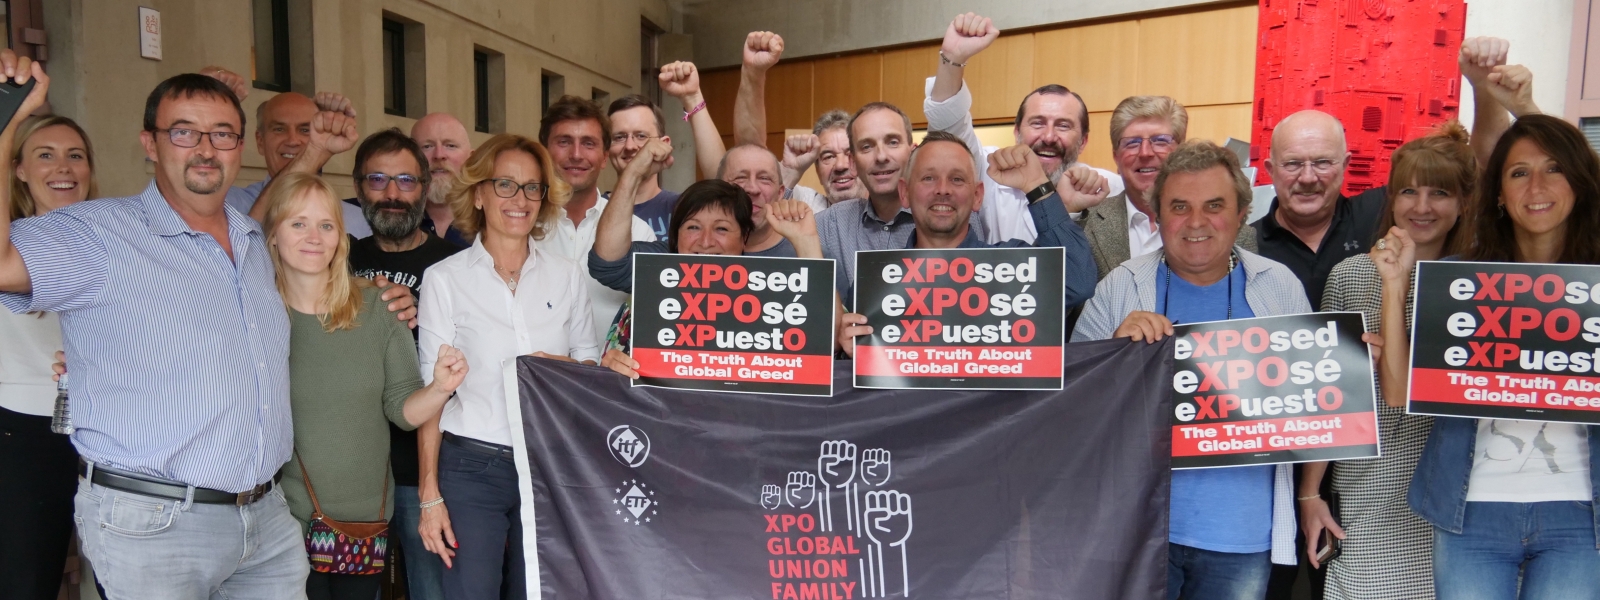 Multinazionale XPO: alleanza globale sindacale per rivendicare rispetto e diritti dei lavoratori